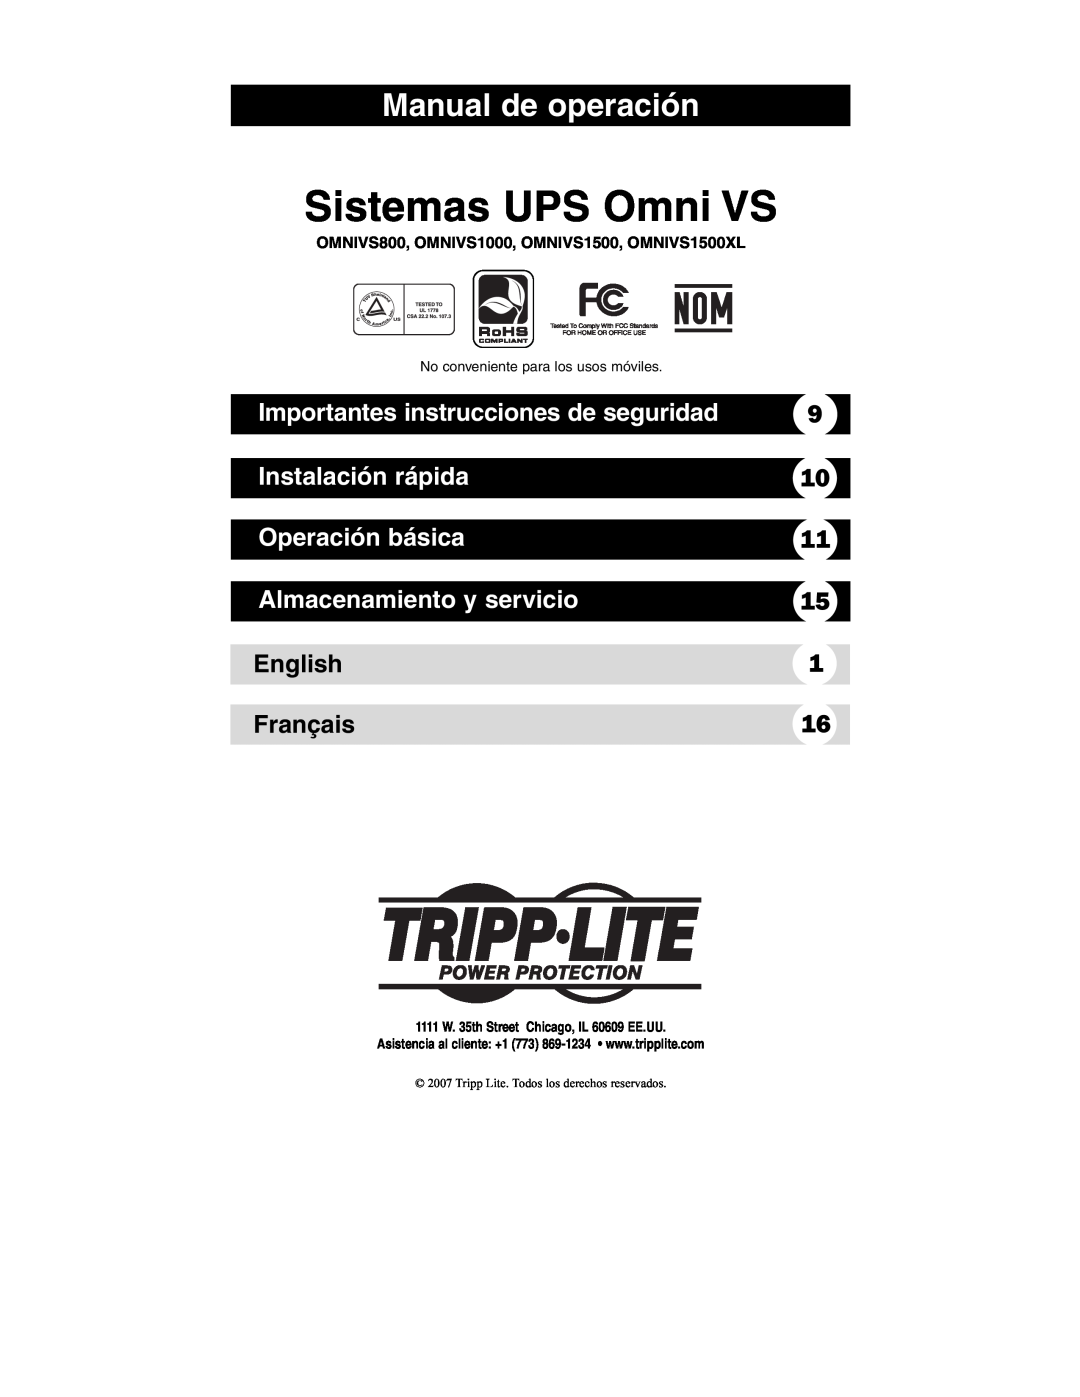 Tripp Lite OMNIVS800 Sistemas UPS Omni VS, Manual de operación, Importantes instrucciones de seguridad, Instalación rápida 